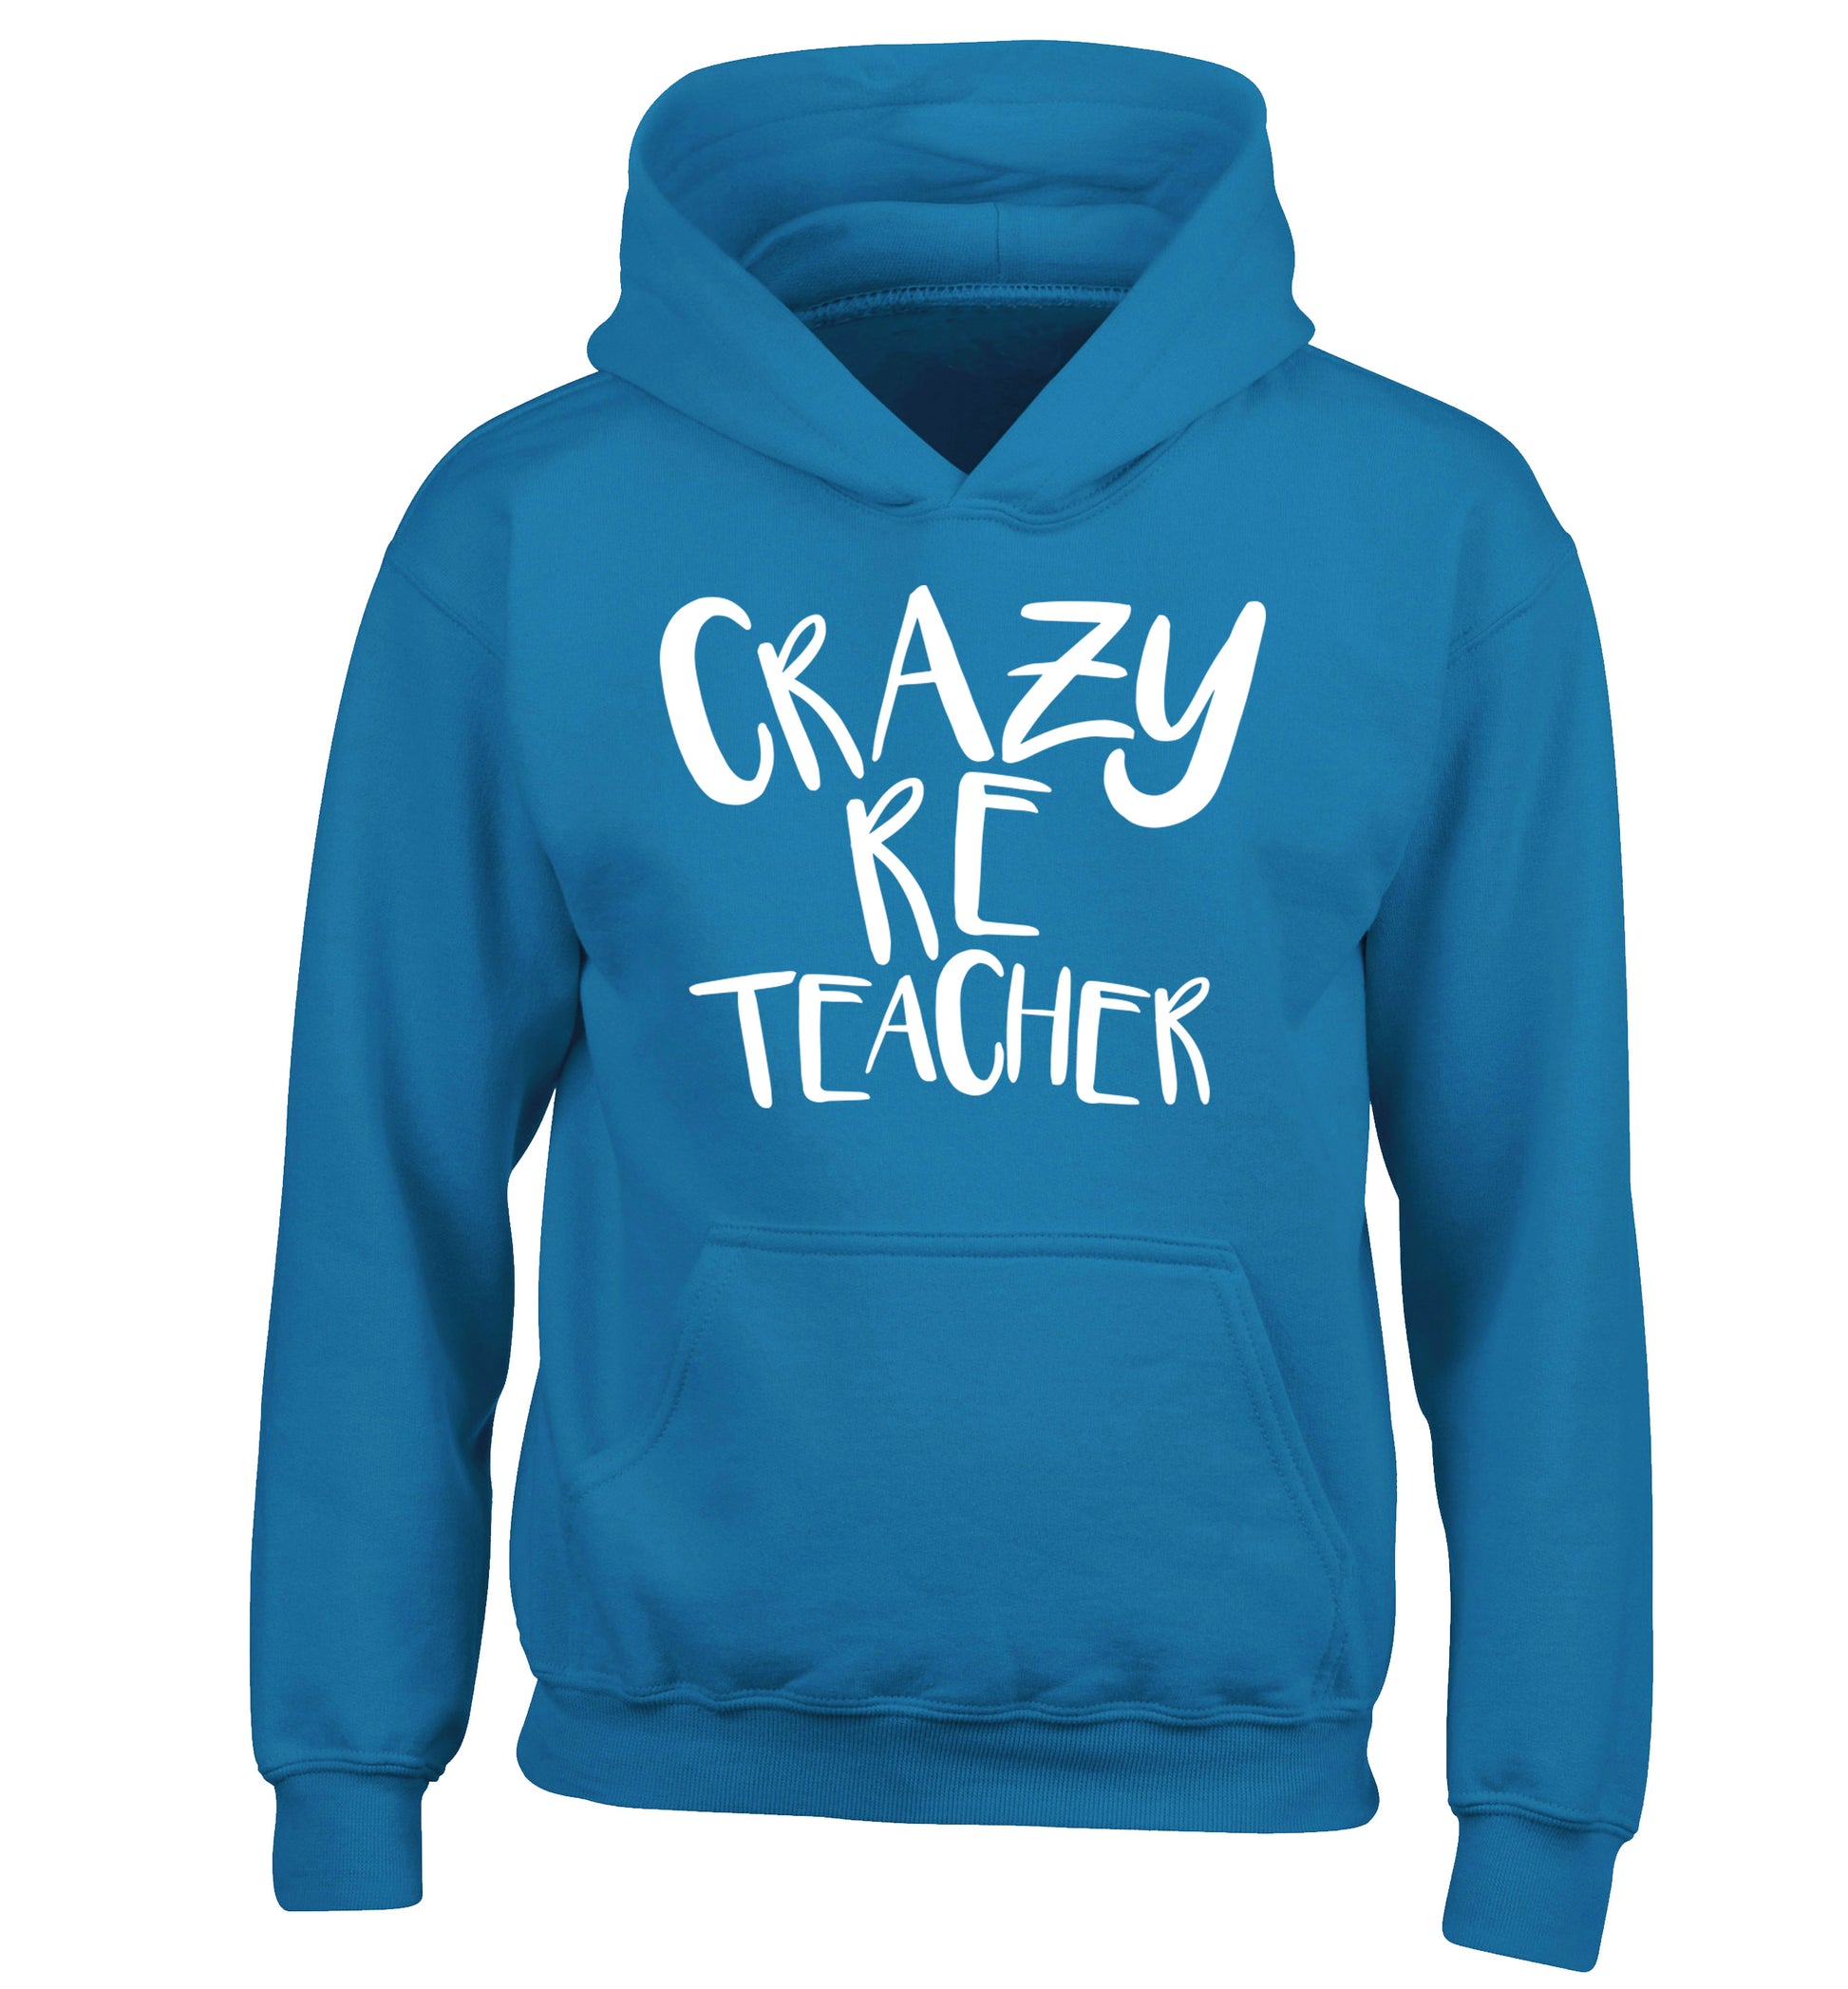 Crazy RE teacher children's blue hoodie 12-13 Years